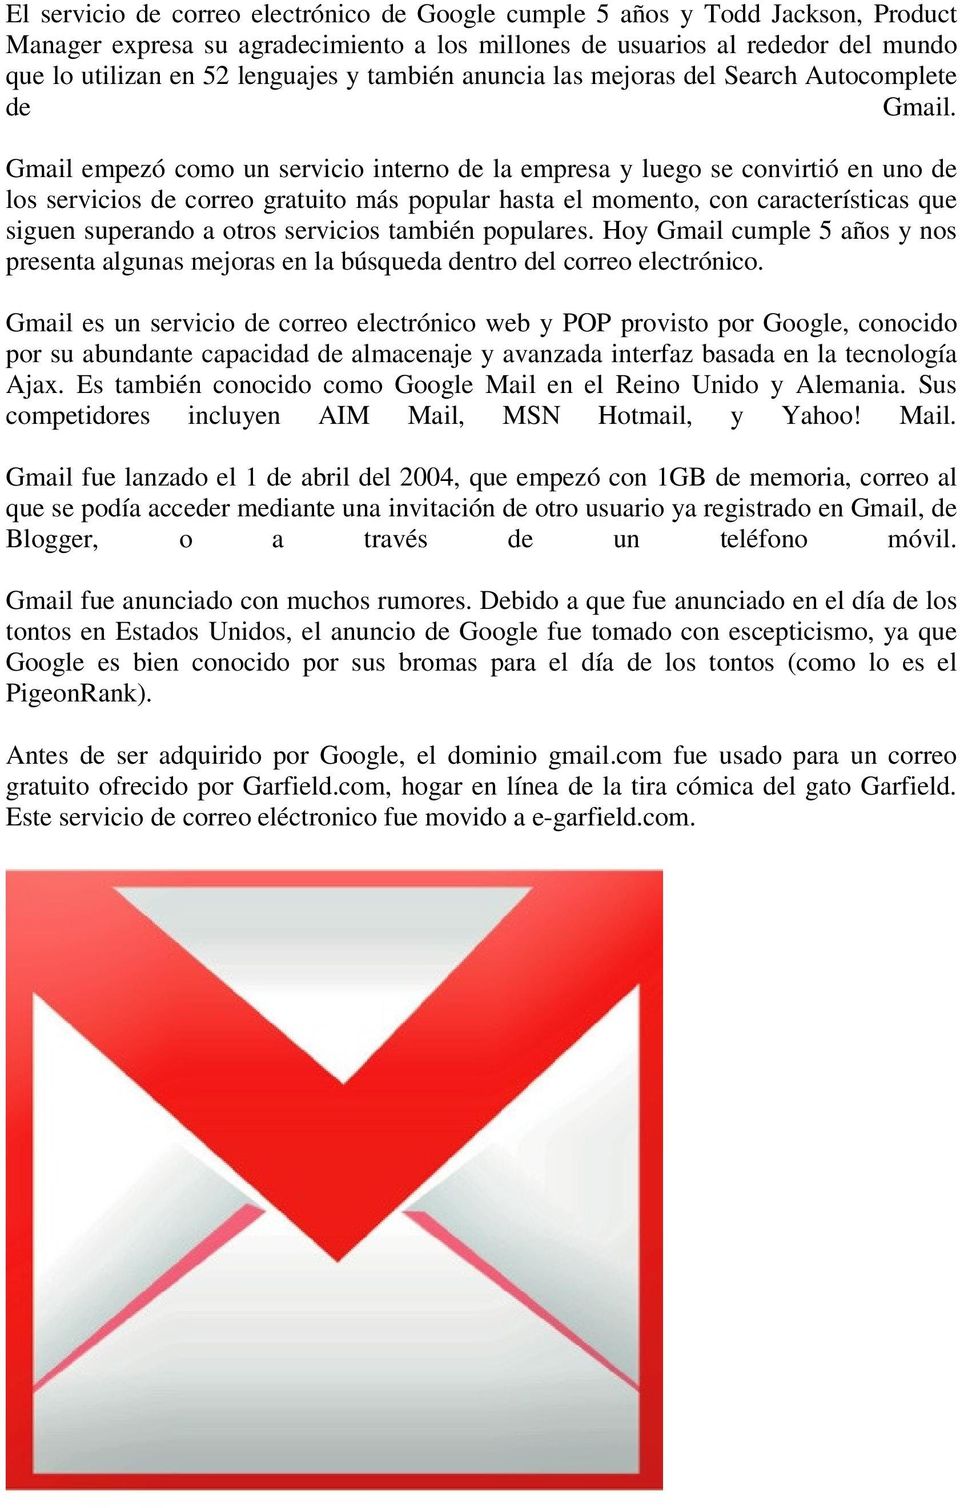 Gmail empezó como un servicio interno de la empresa y luego se convirtió en uno de los servicios de correo gratuito más popular hasta el momento, con características que siguen superando a otros